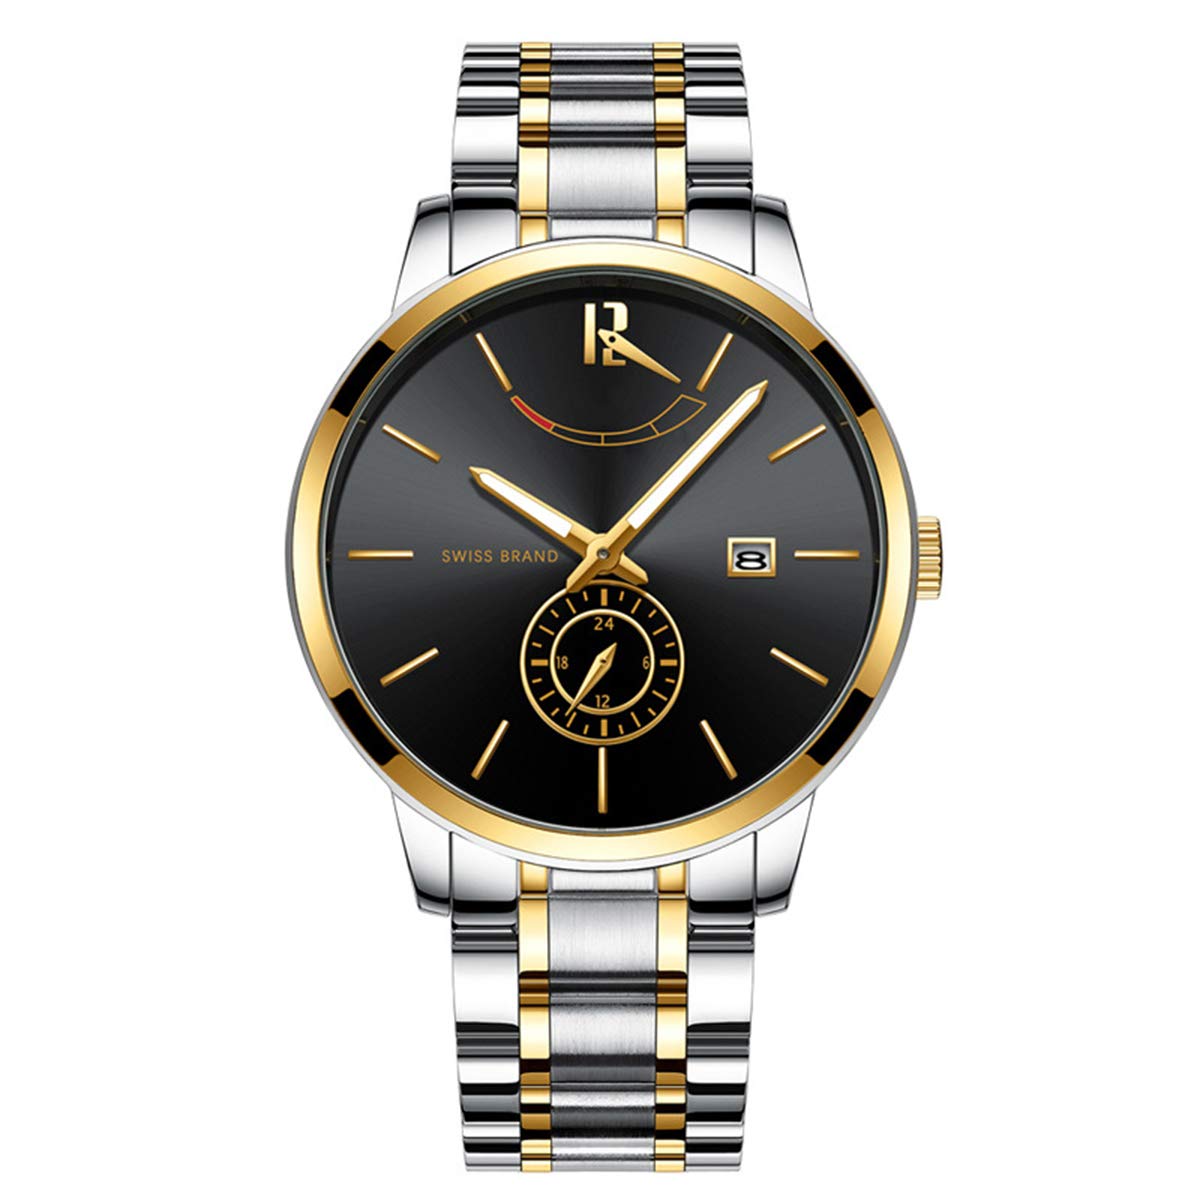 iFCOW Armbanduhr für Herren, Quarzuhr, Edelstahl, analoge Armbanduhr für Freizeit, Business (blau), Silber + Gold + Schwarz, Armband